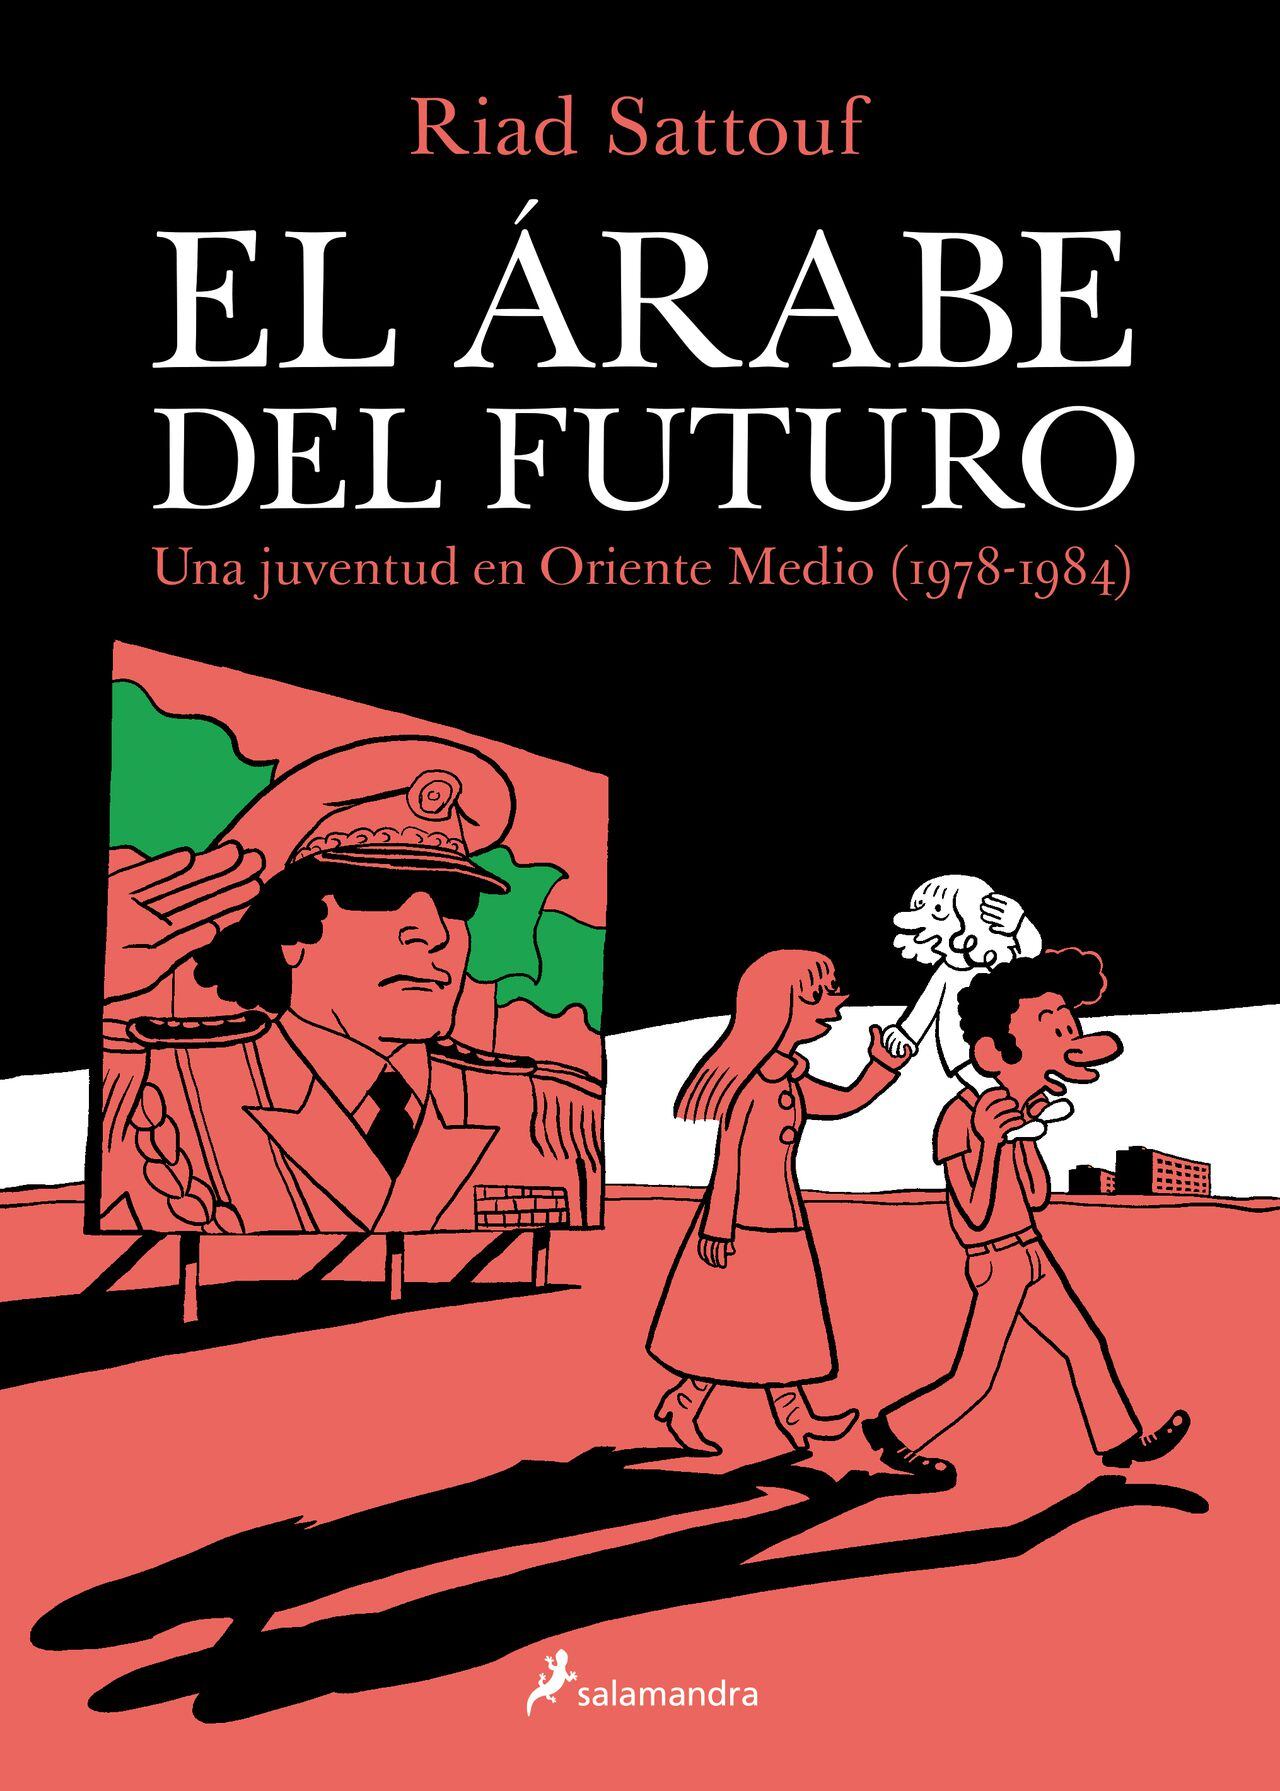 El árabe del futuro: una juventud en Oriente Medio, Vol. 1 al 5
Riad Sattouf
Salamandra Graphic